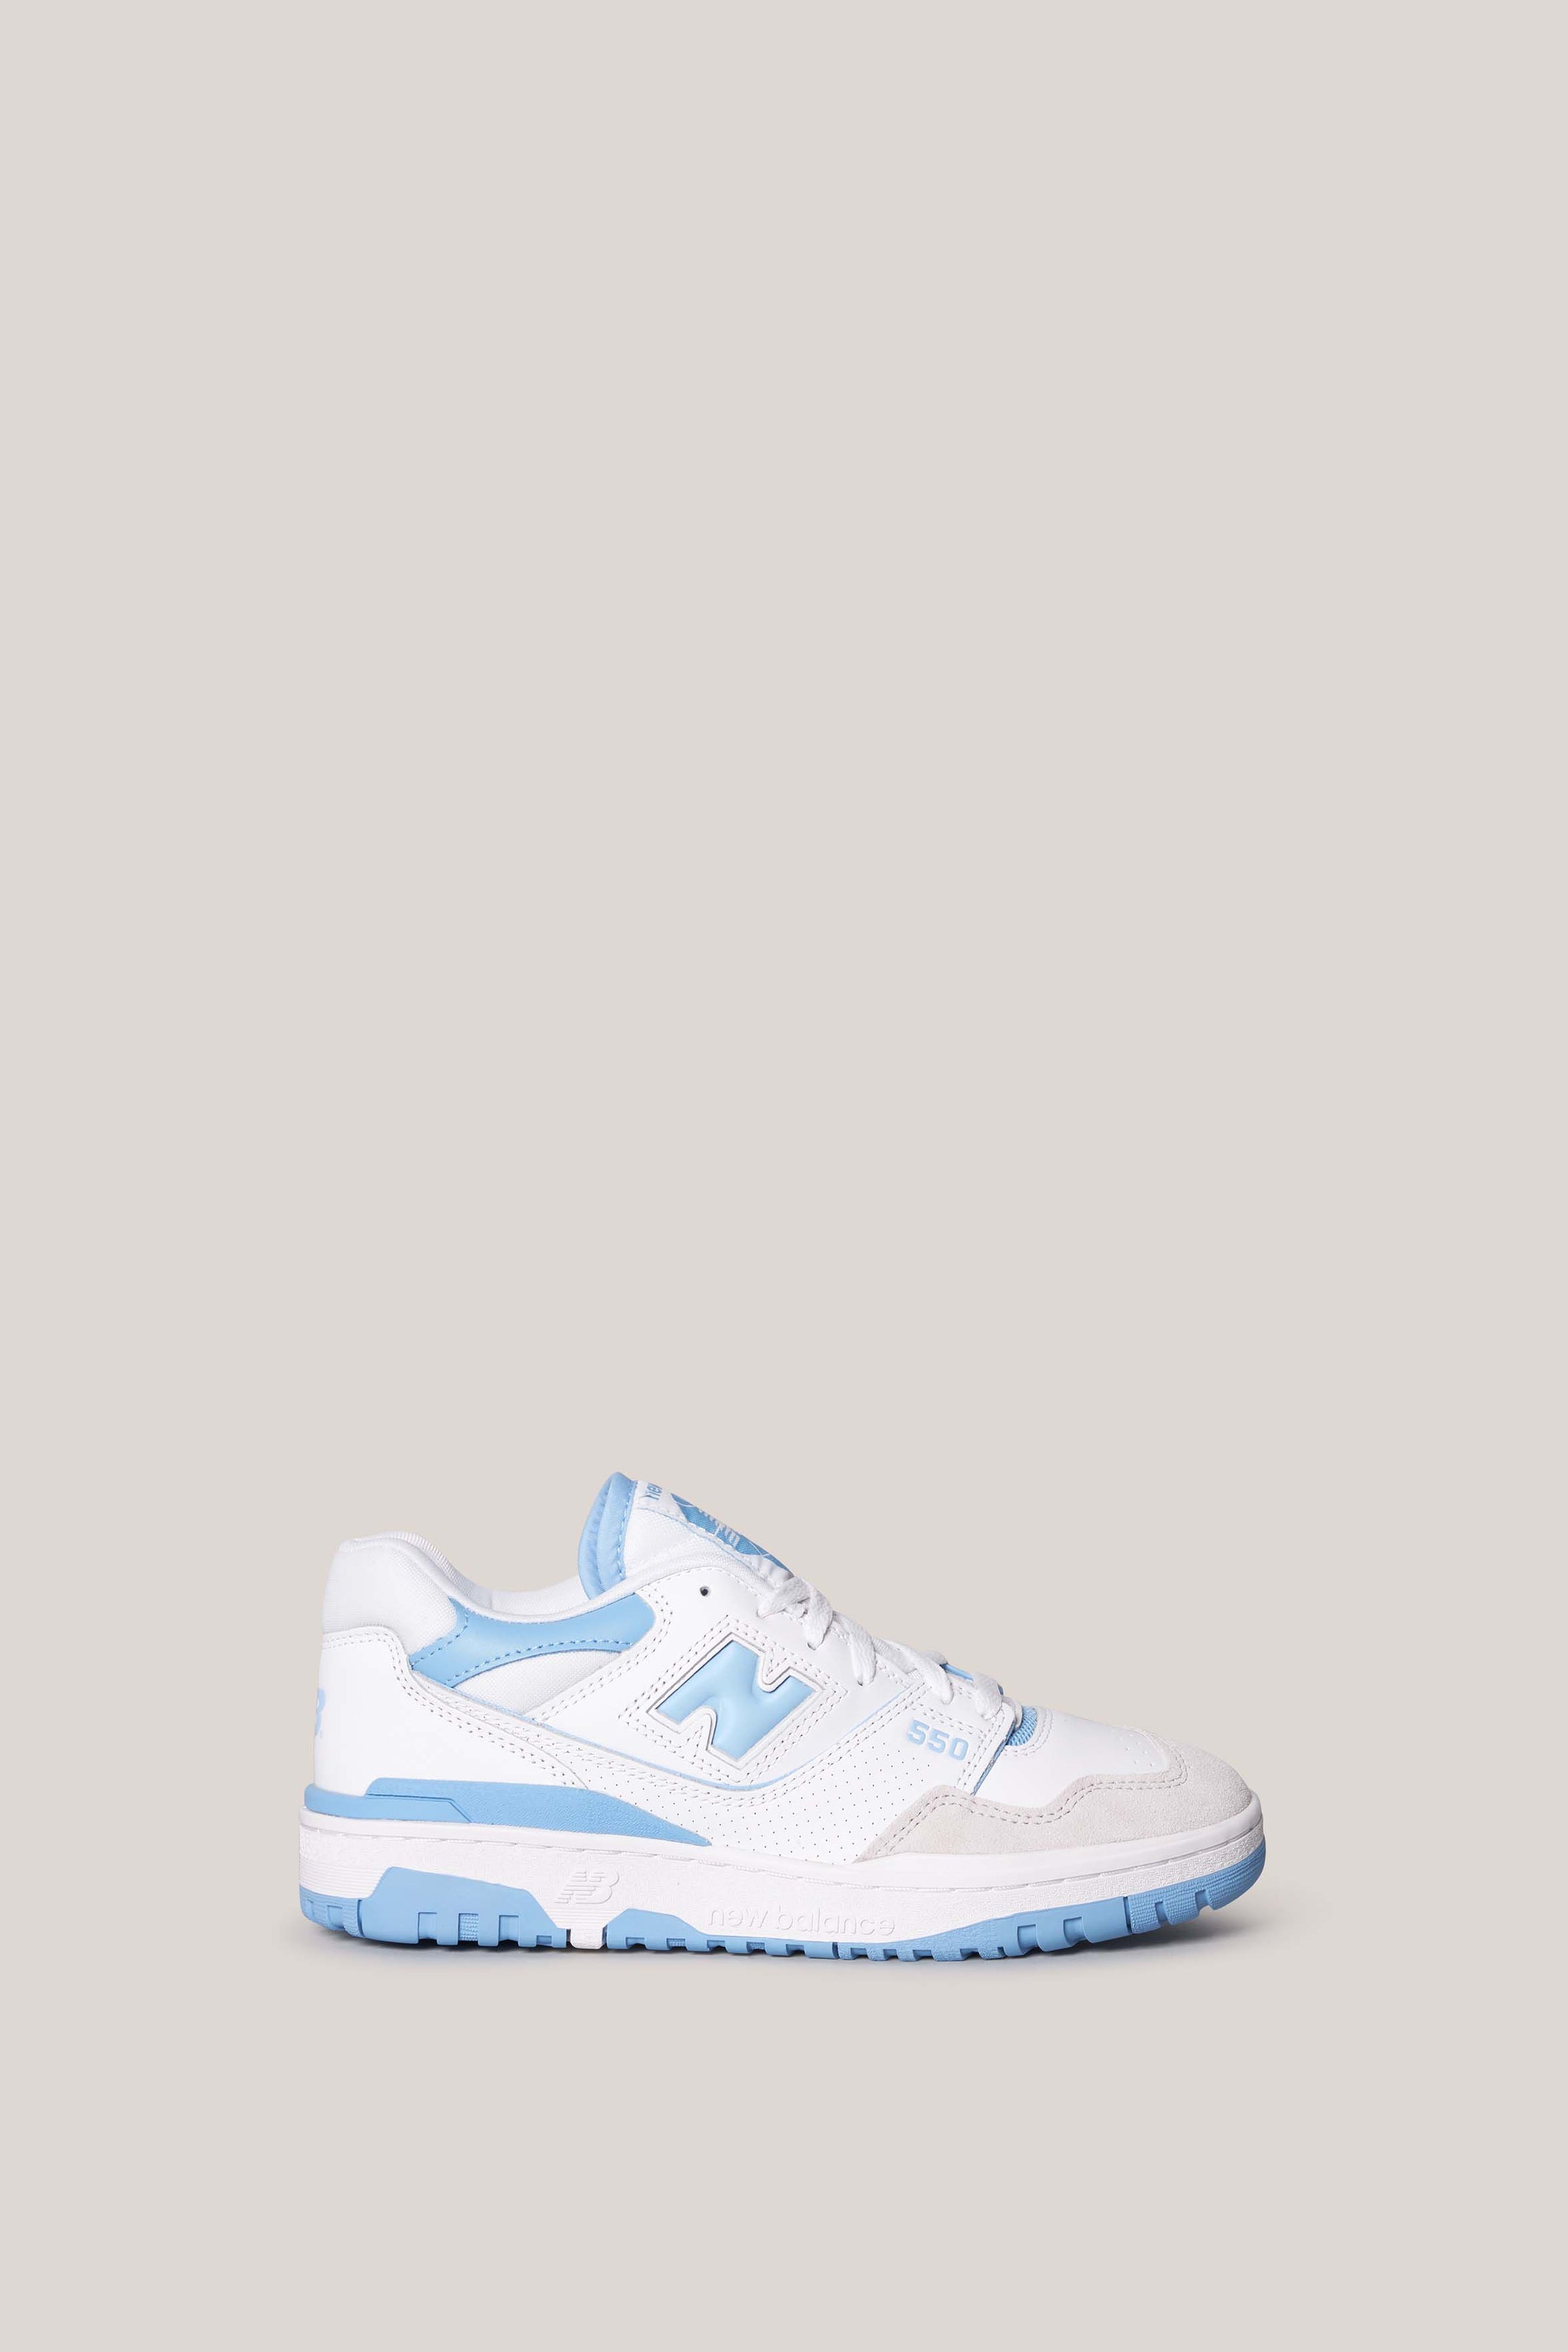 White-White Blue 550 Sneakers